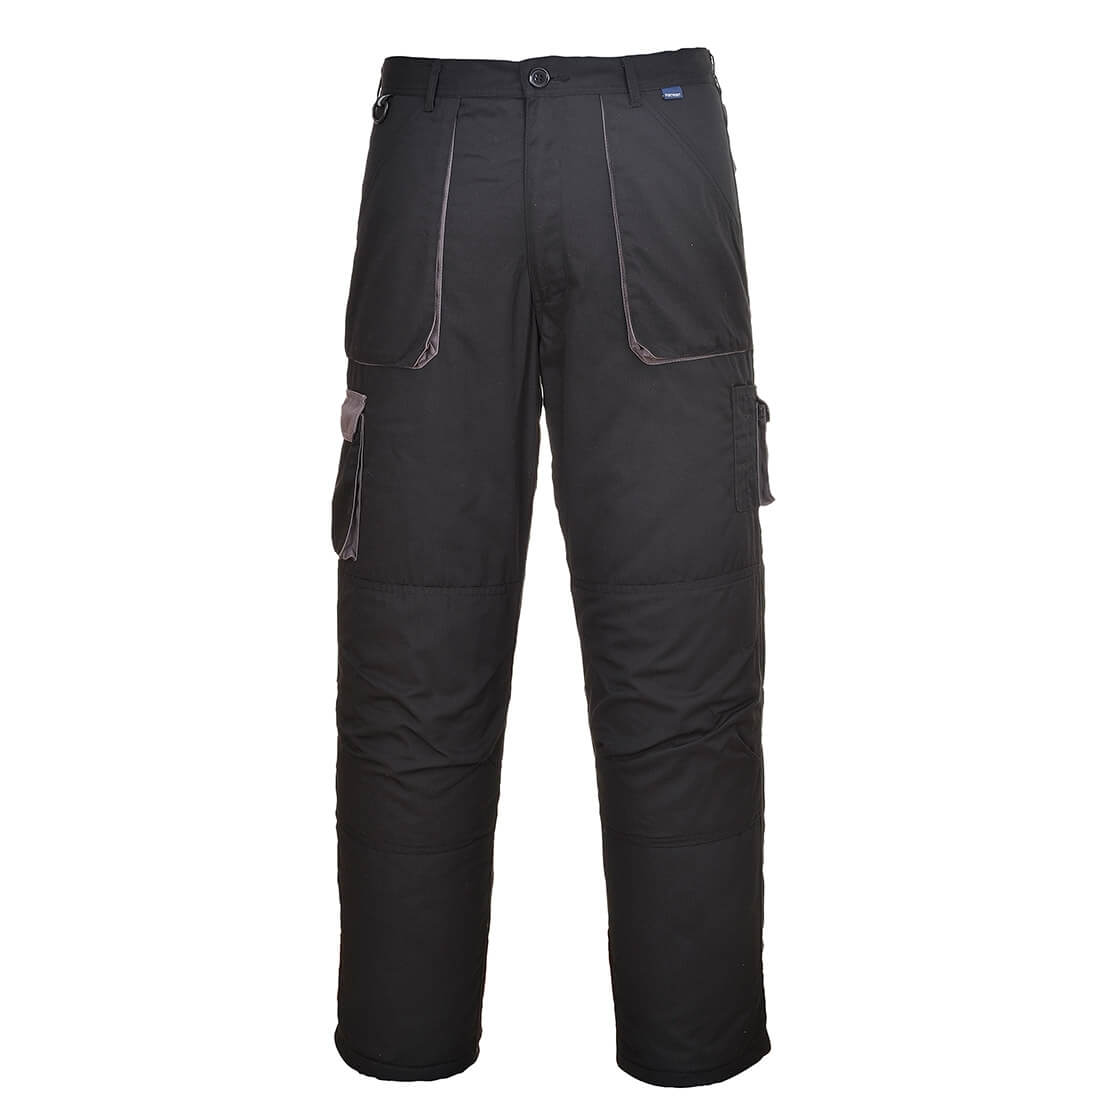 Pantalones bicolor Texo - Ropa de protección